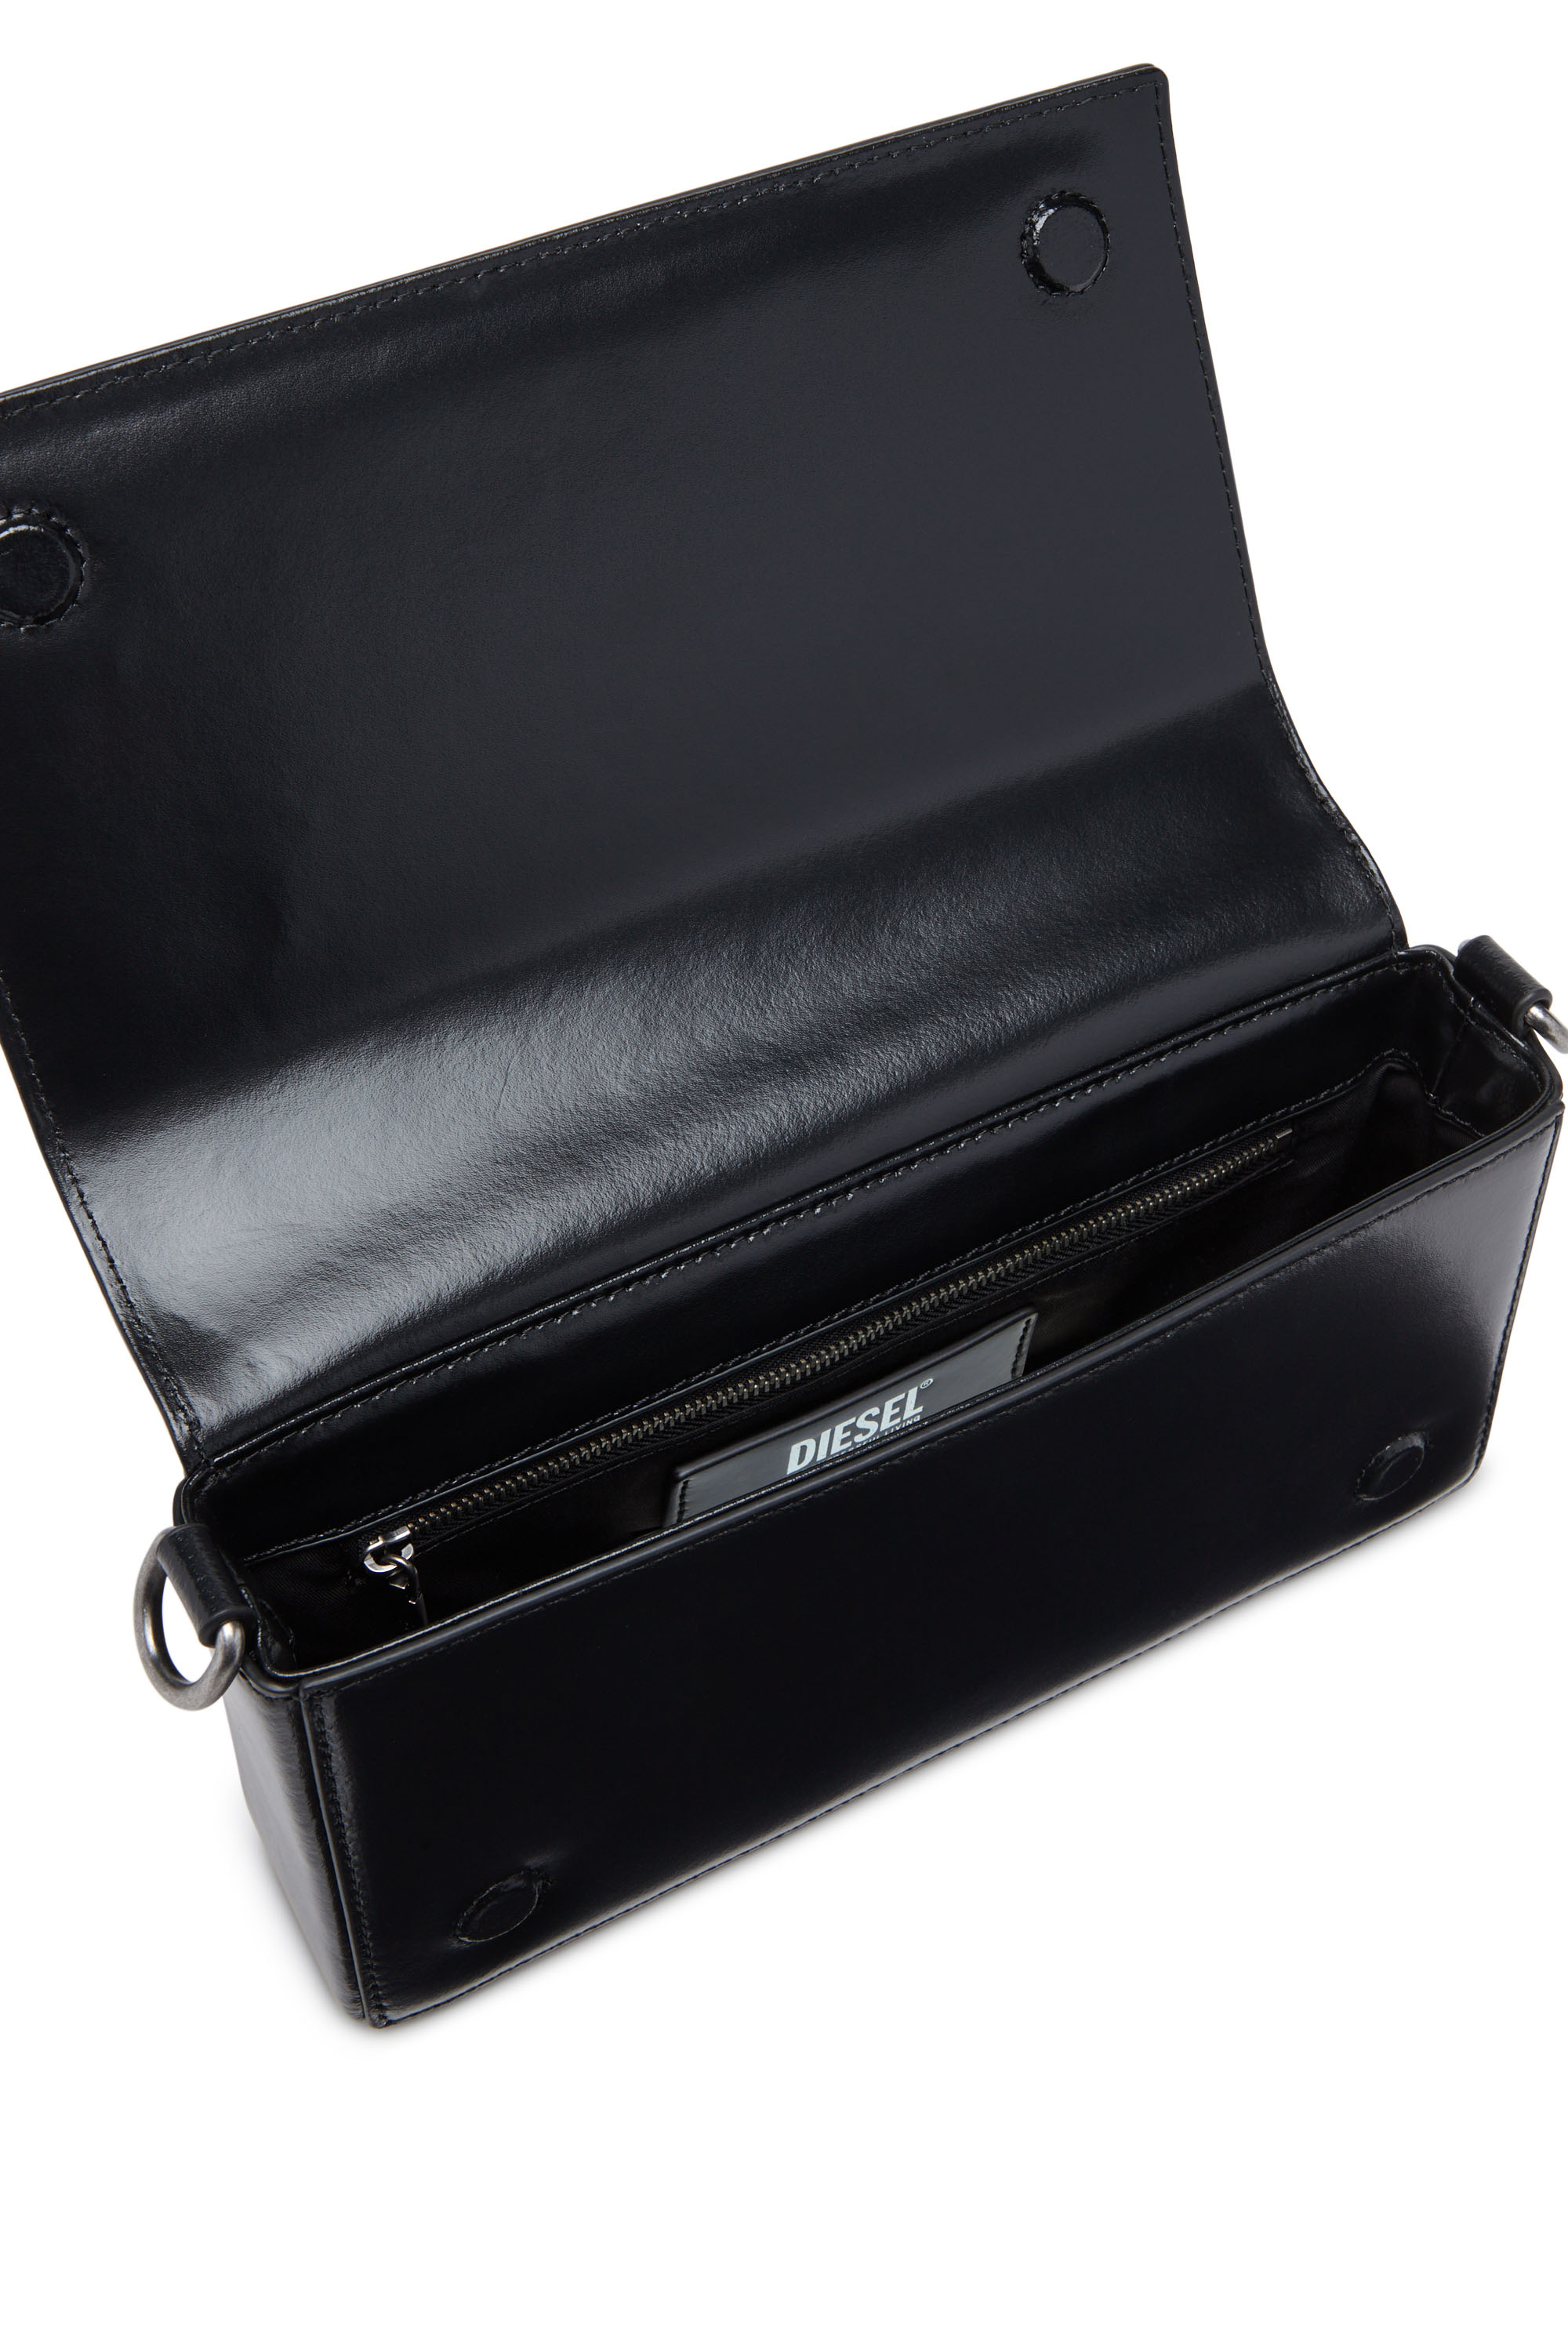 Diesel Charm-D Denim Shoulder Bag - Farfetch